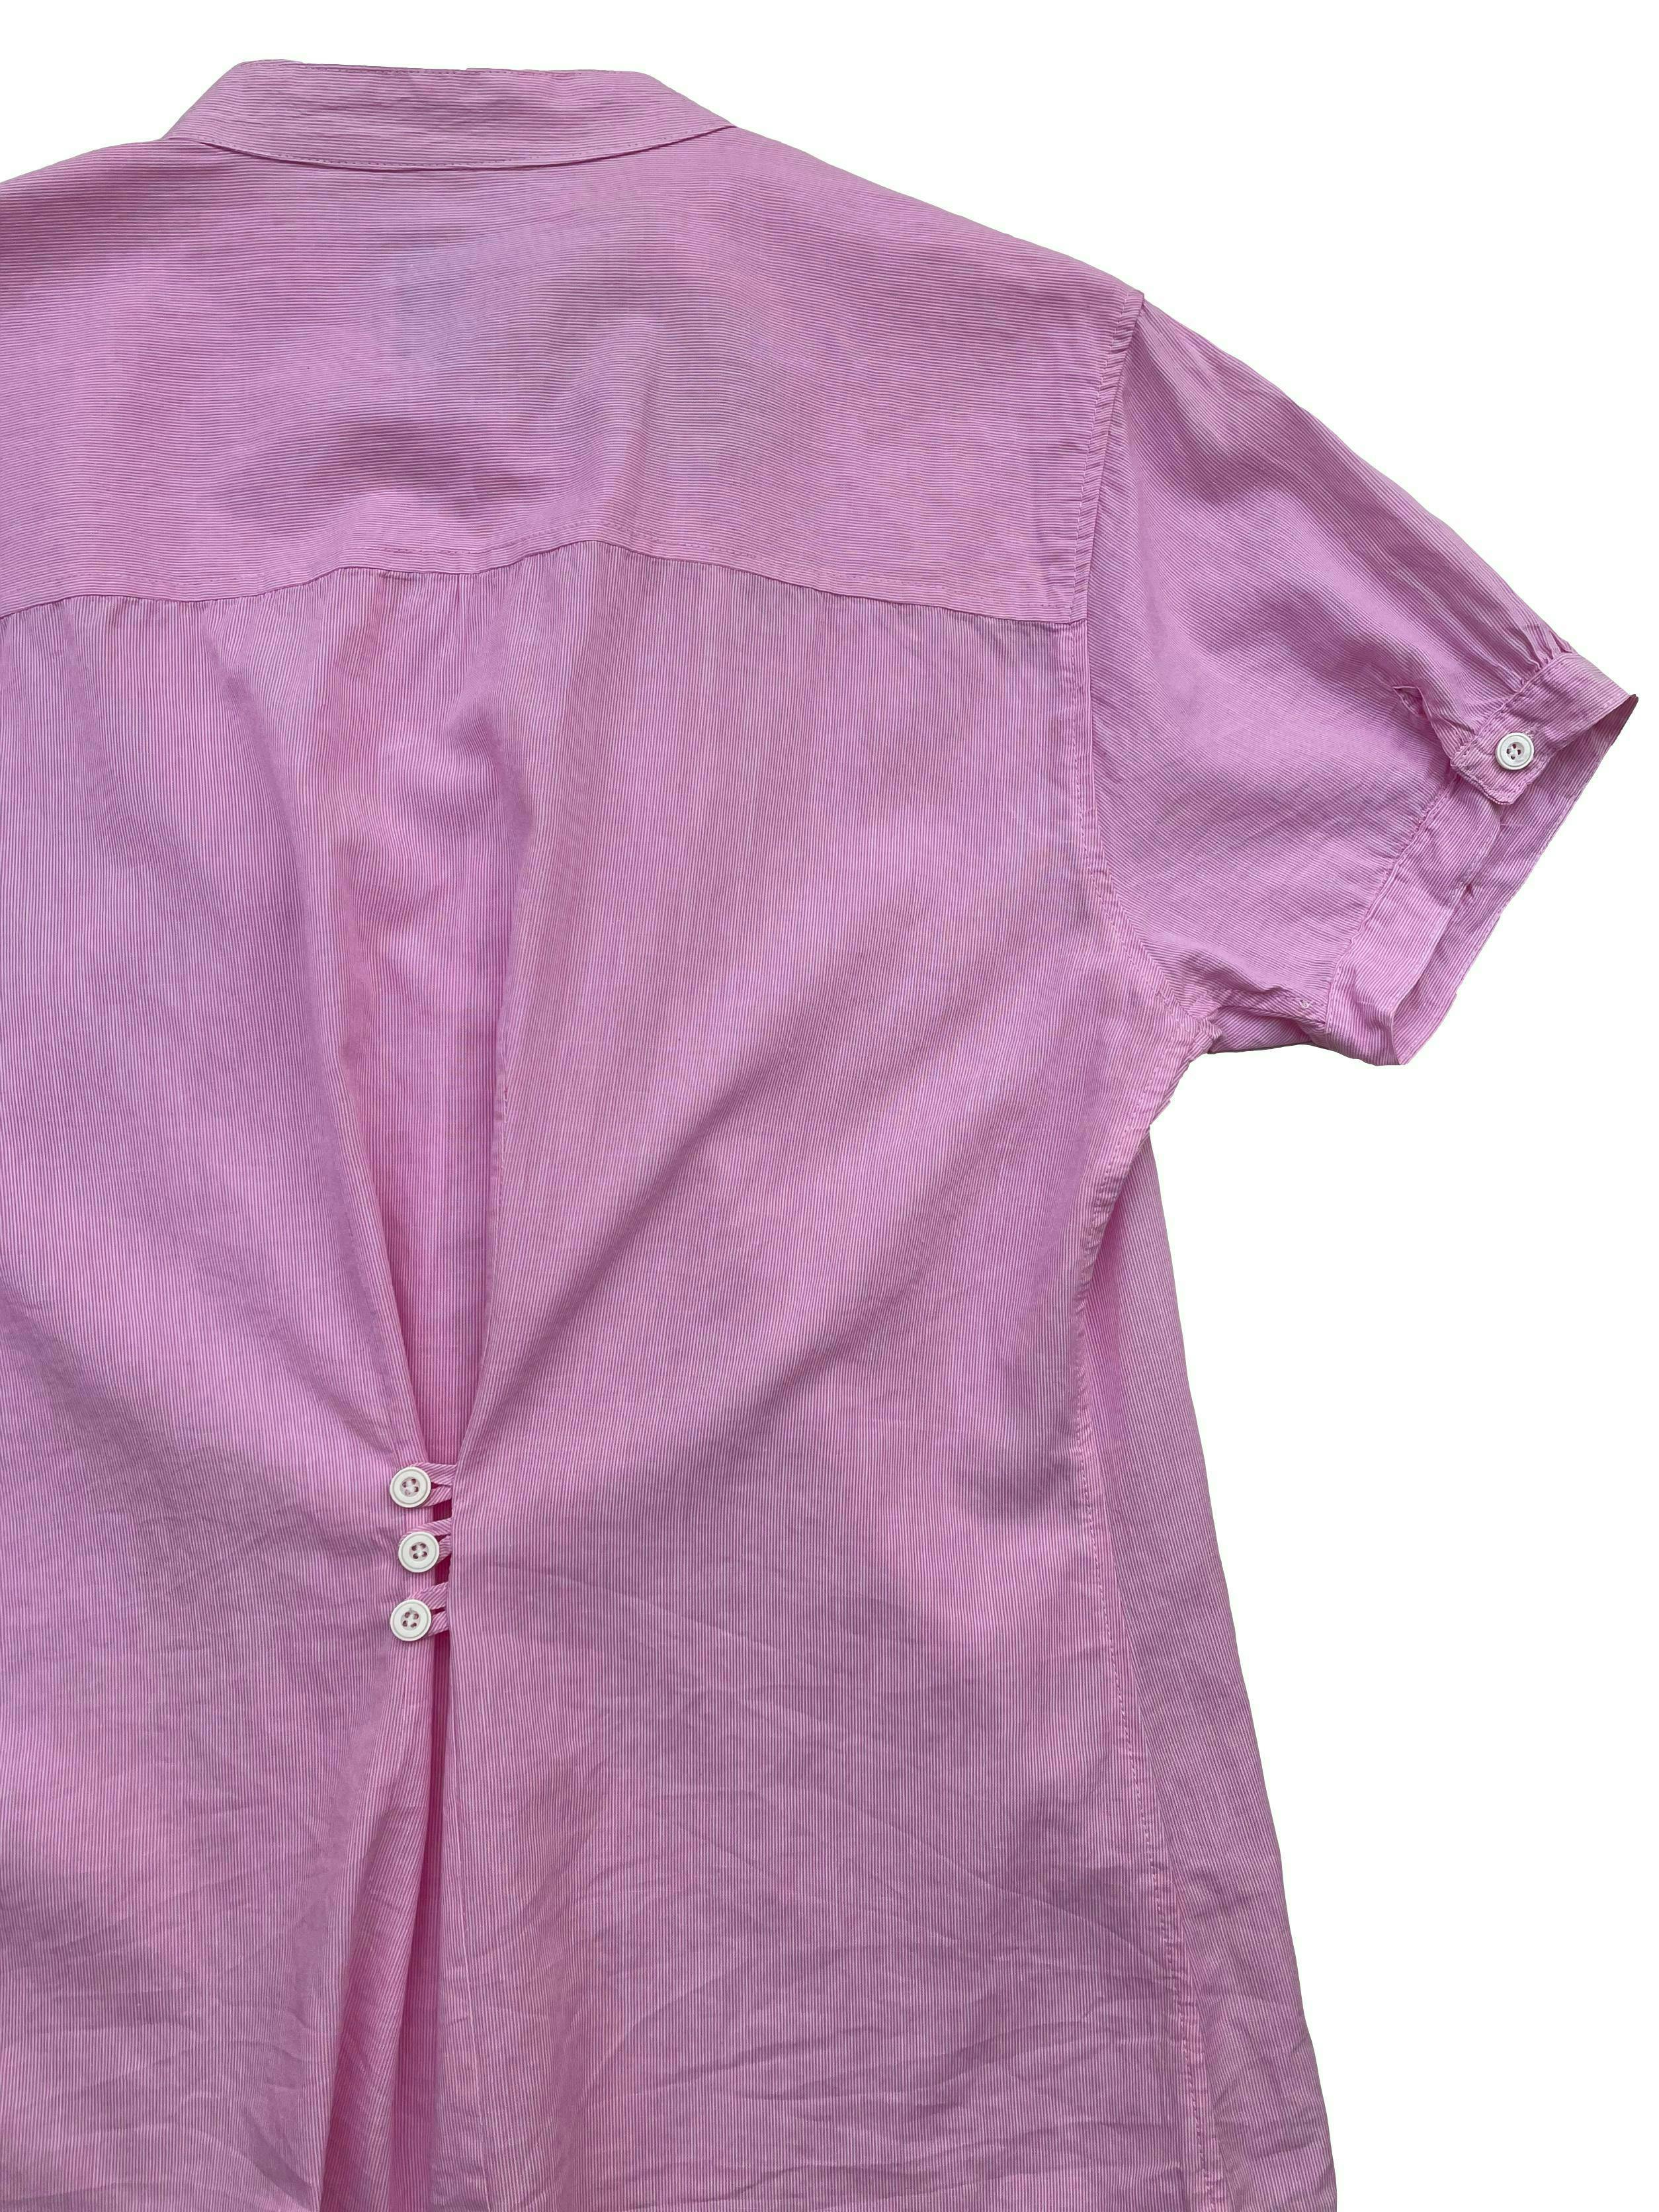 Blusa Viaggoa rayas rosas y blancas, botones delanteros y tres en la espalda para ajustar la cintura. Busto 110cm Largo 62cm